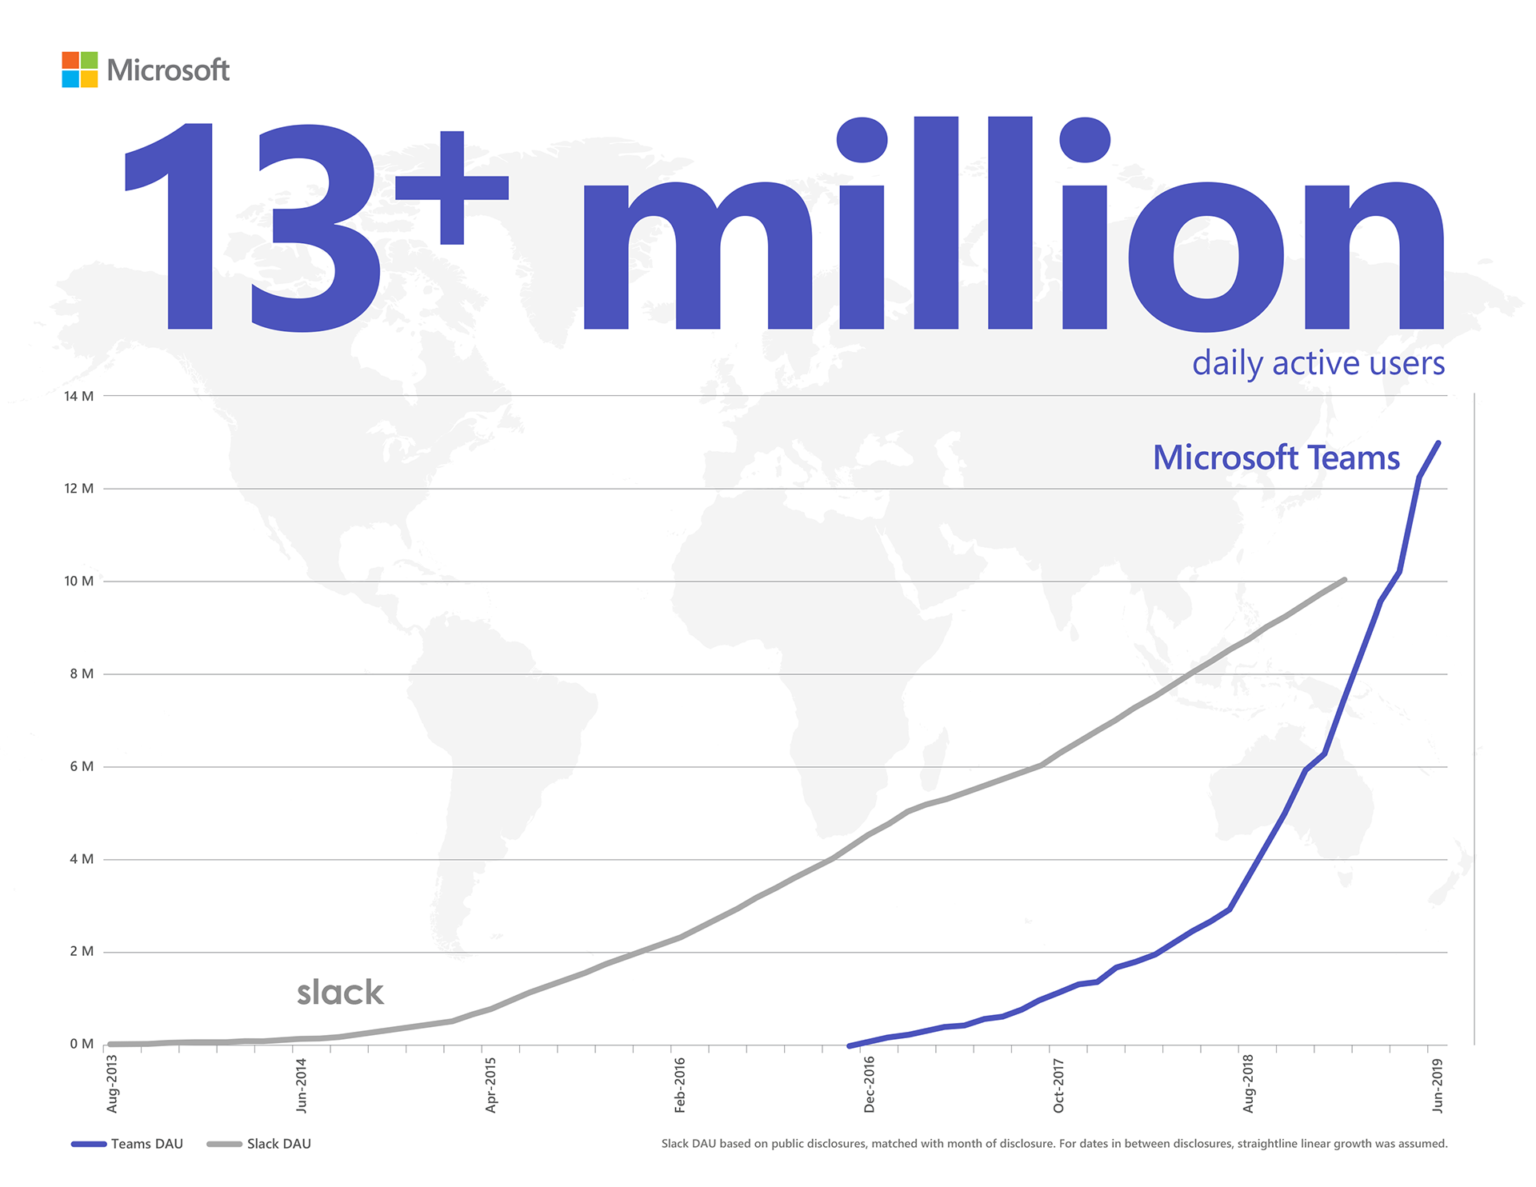 Đồ họa thông tin thể hiện rằng Microsoft Teams đang vượt qua Slack ở khía cạnh người dùng hiện hoạt hàng ngày với con số hơn 13 triệu. Tỷ lệ DAU của Slack được dựa trên các công bố công khai, trùng khớp với tháng công khai. Với những ngày trong khoảng công bố, mức tăng trưởng tuyến tính đường thẳng được sử dụng.